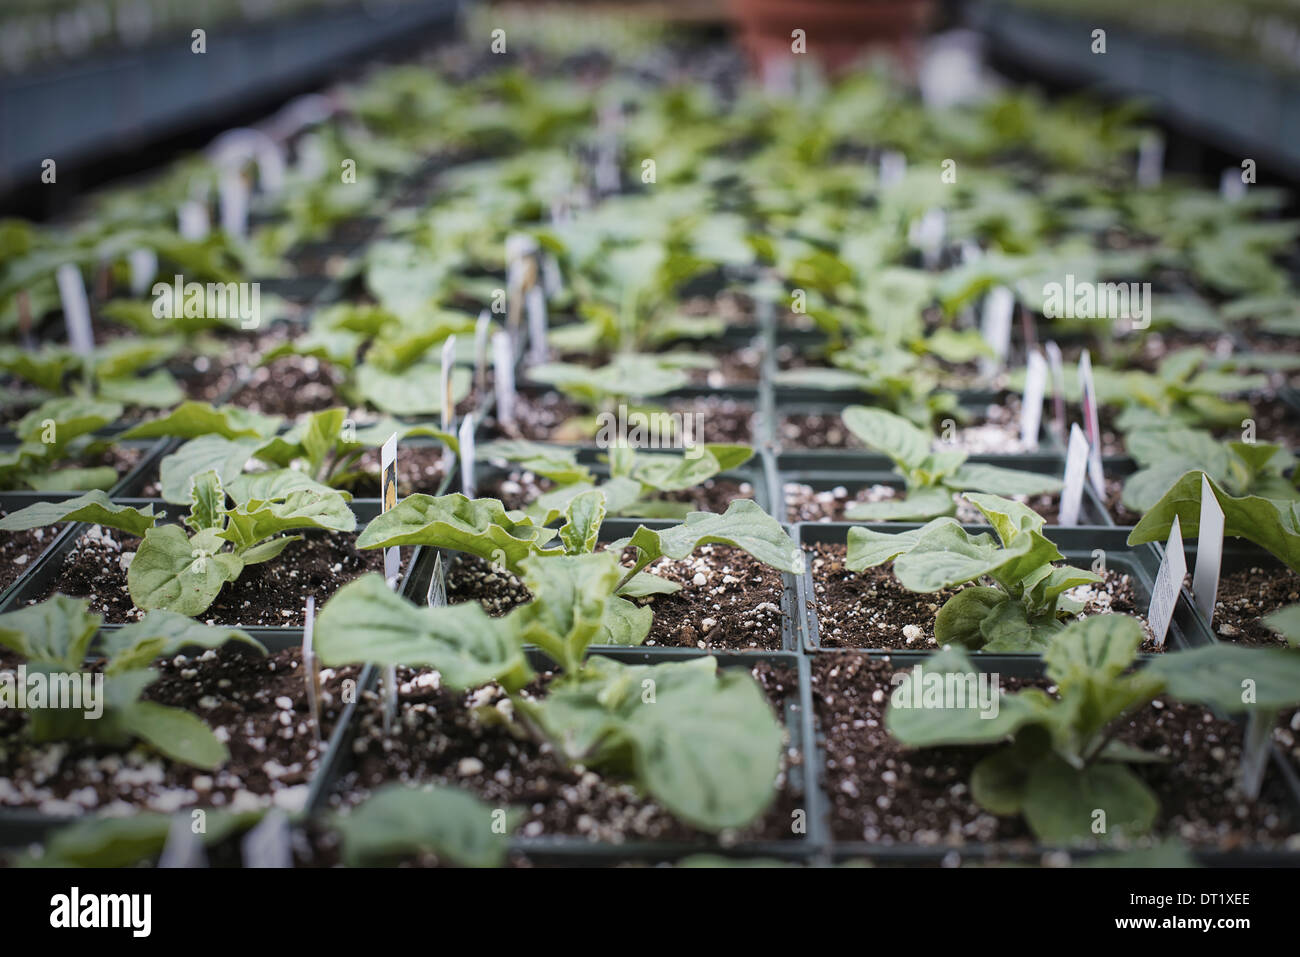 Frühling-Wachstum in einer organischen Gärtnerei Gewächshaus Inszenierung mit Schalen von Jungpflanzen Stockfoto